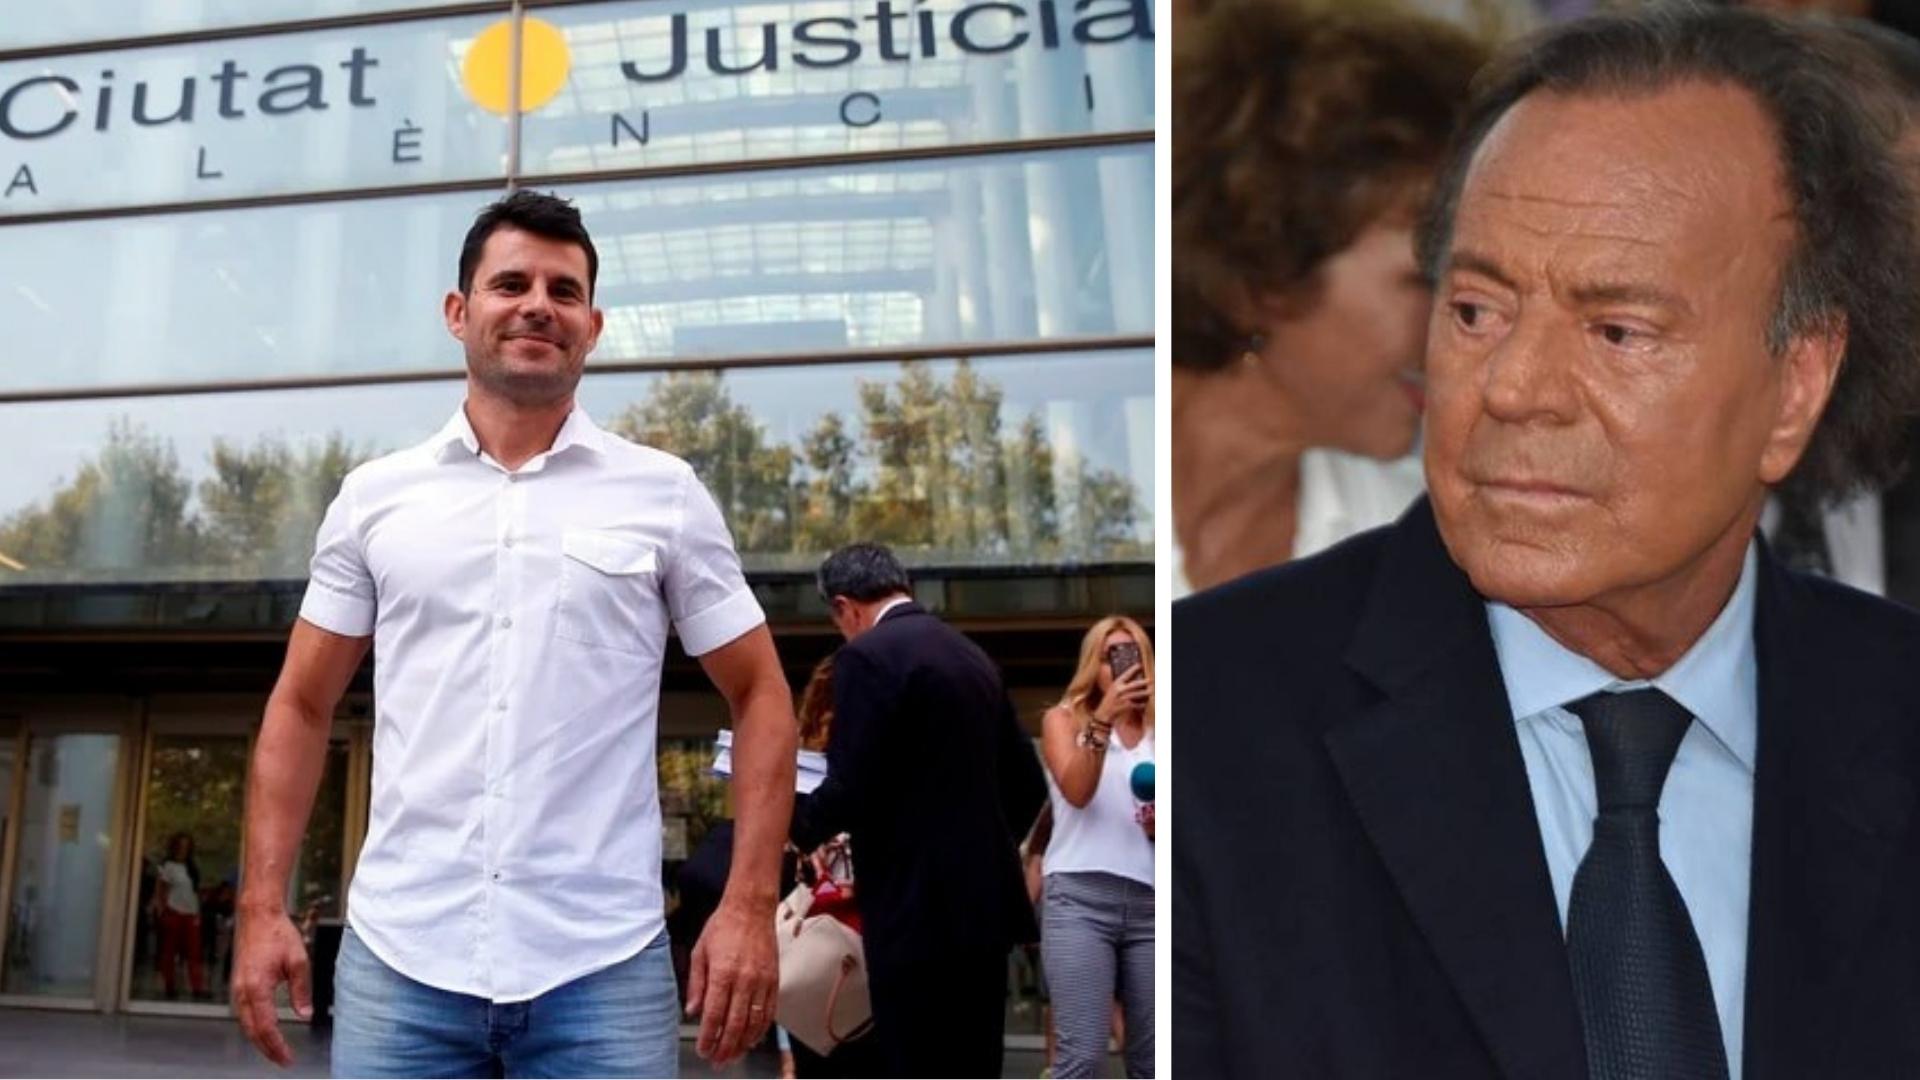 La causa judicial concluyó el pasado mes de marzo en España, cuando el Tribunal Constitucional rechazó el recurso planteado por Javier Sánchez Santos